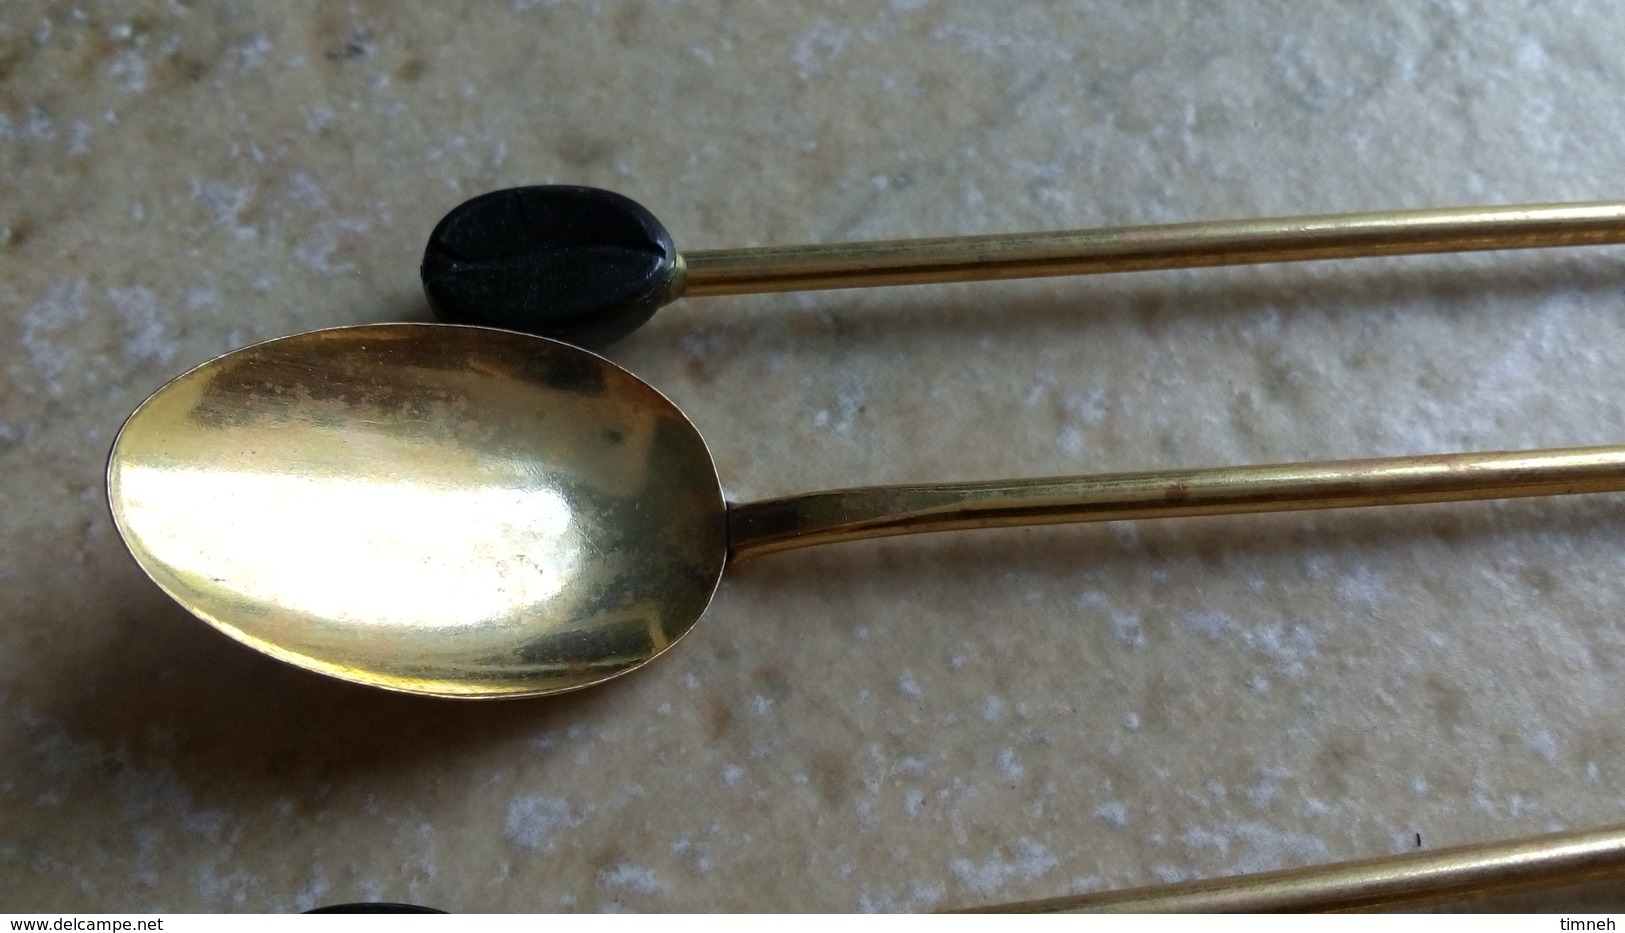 6 Longues petites cuillères metal doré café mazagran - deco GRAIN DE CAFE plastique 19cm traces oxydation - deco vintage